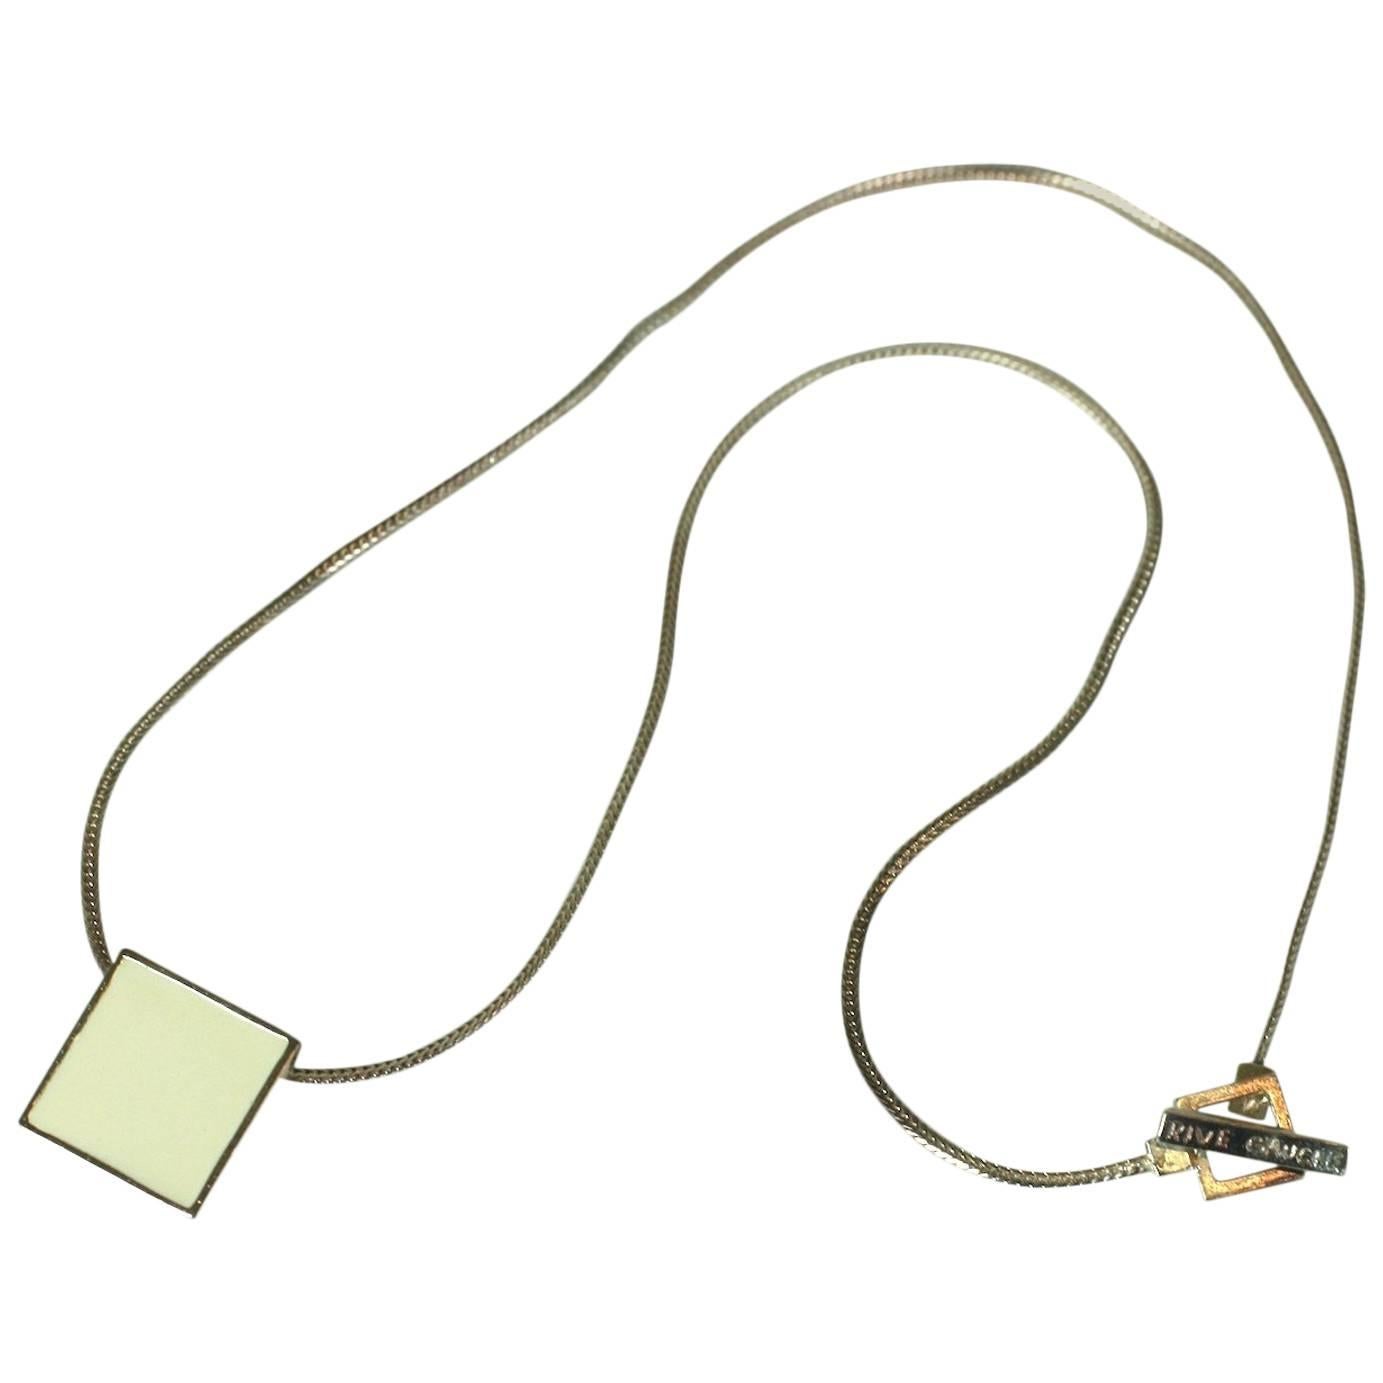  Hedi Slimane for Yves Saint Laurent Men's Necklace